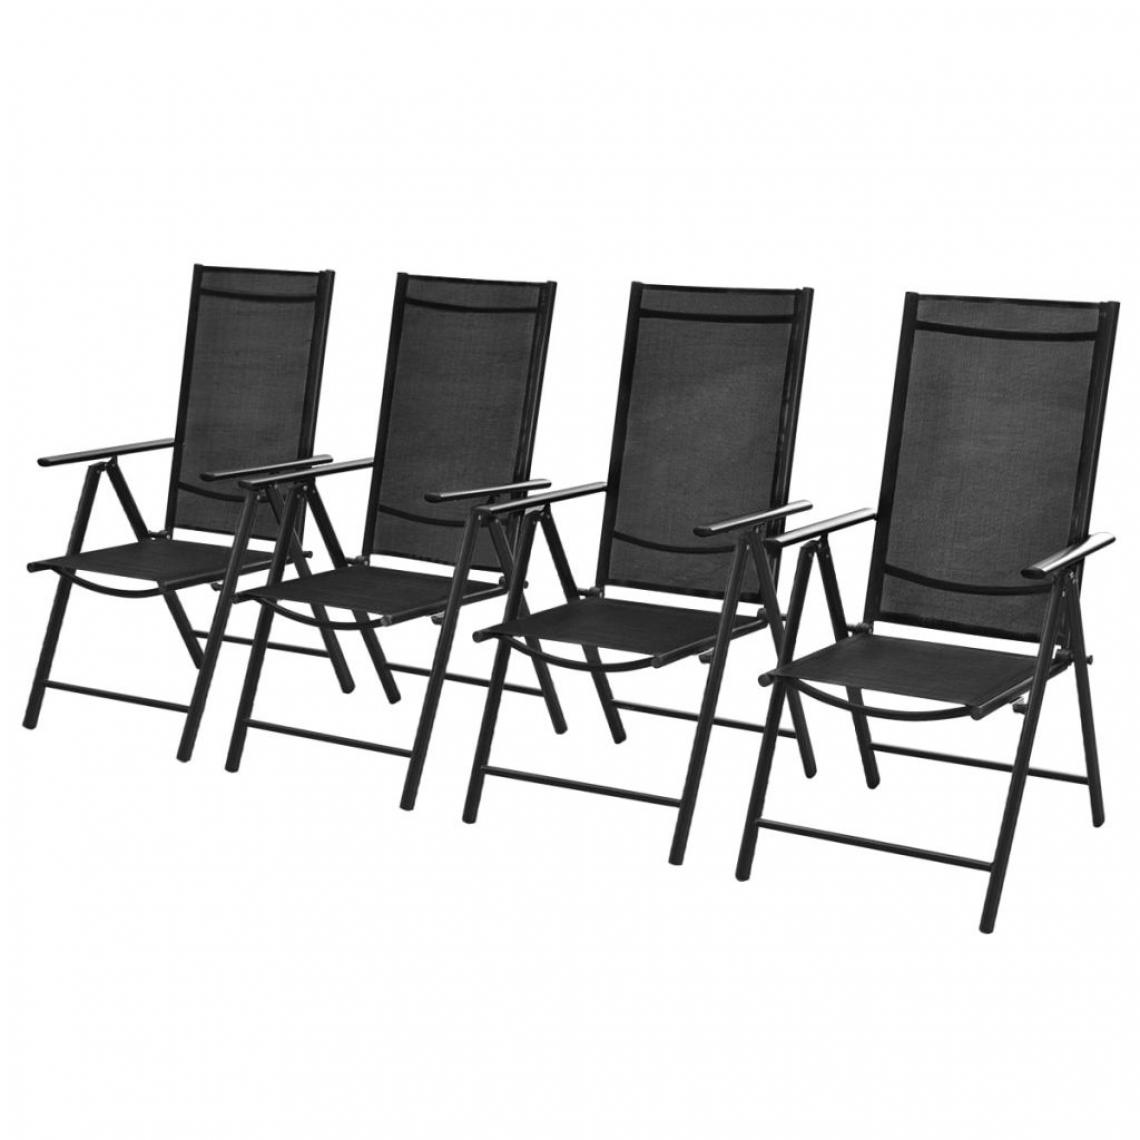 Vidaxl - Chaises d'extérieur 4 pcs 54x73x107 cm Aluminium Noir - Noir - Chaises de jardin